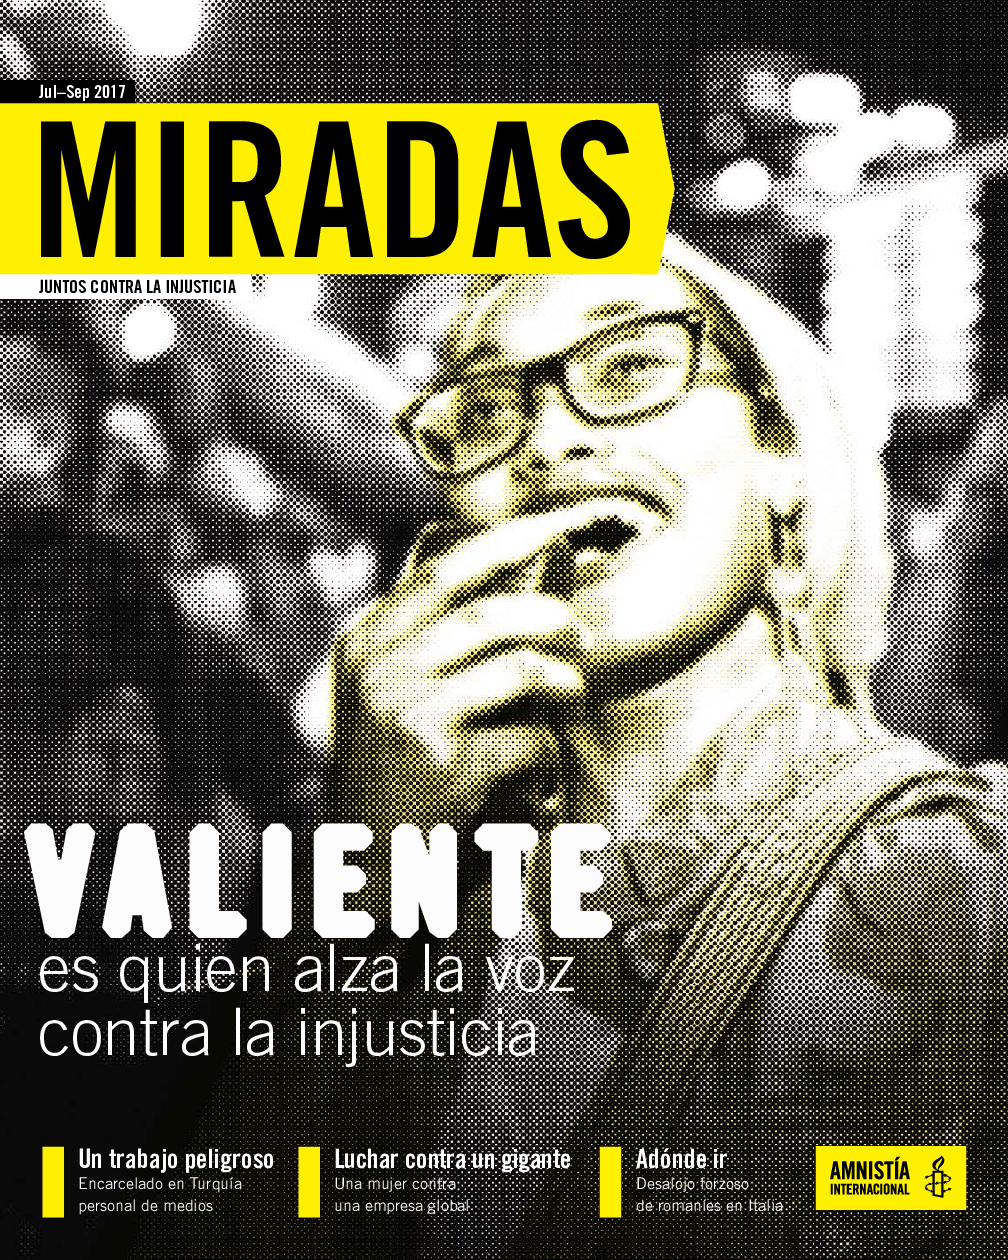 Miradas- Julio-Septiembre 2017: Valiente es quien alza la voz contra la  injusticia - Amnistía Internacional